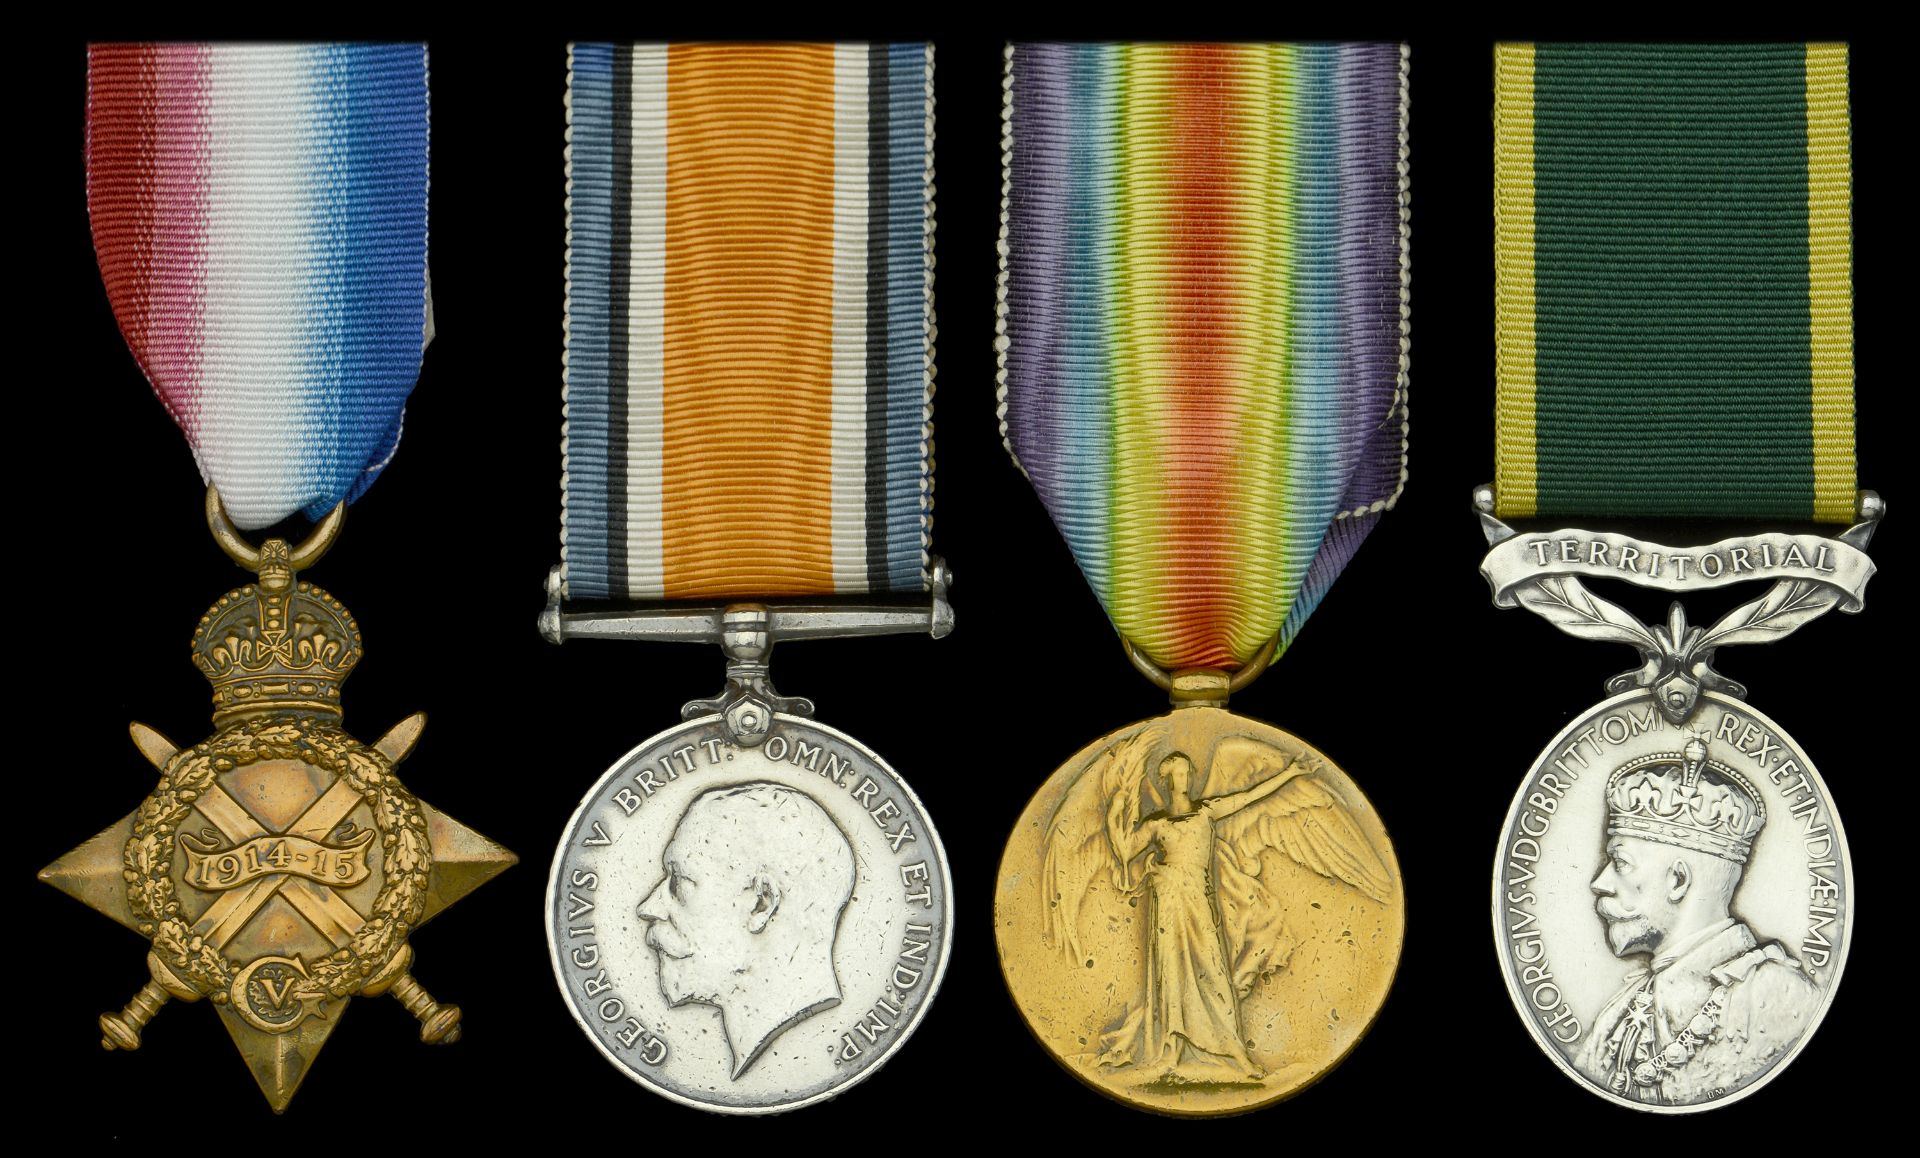 Four: Corporal J. T. Champs, East Kent Regiment 1914-15 Star (1682 Pte. J. T. Champs. E....